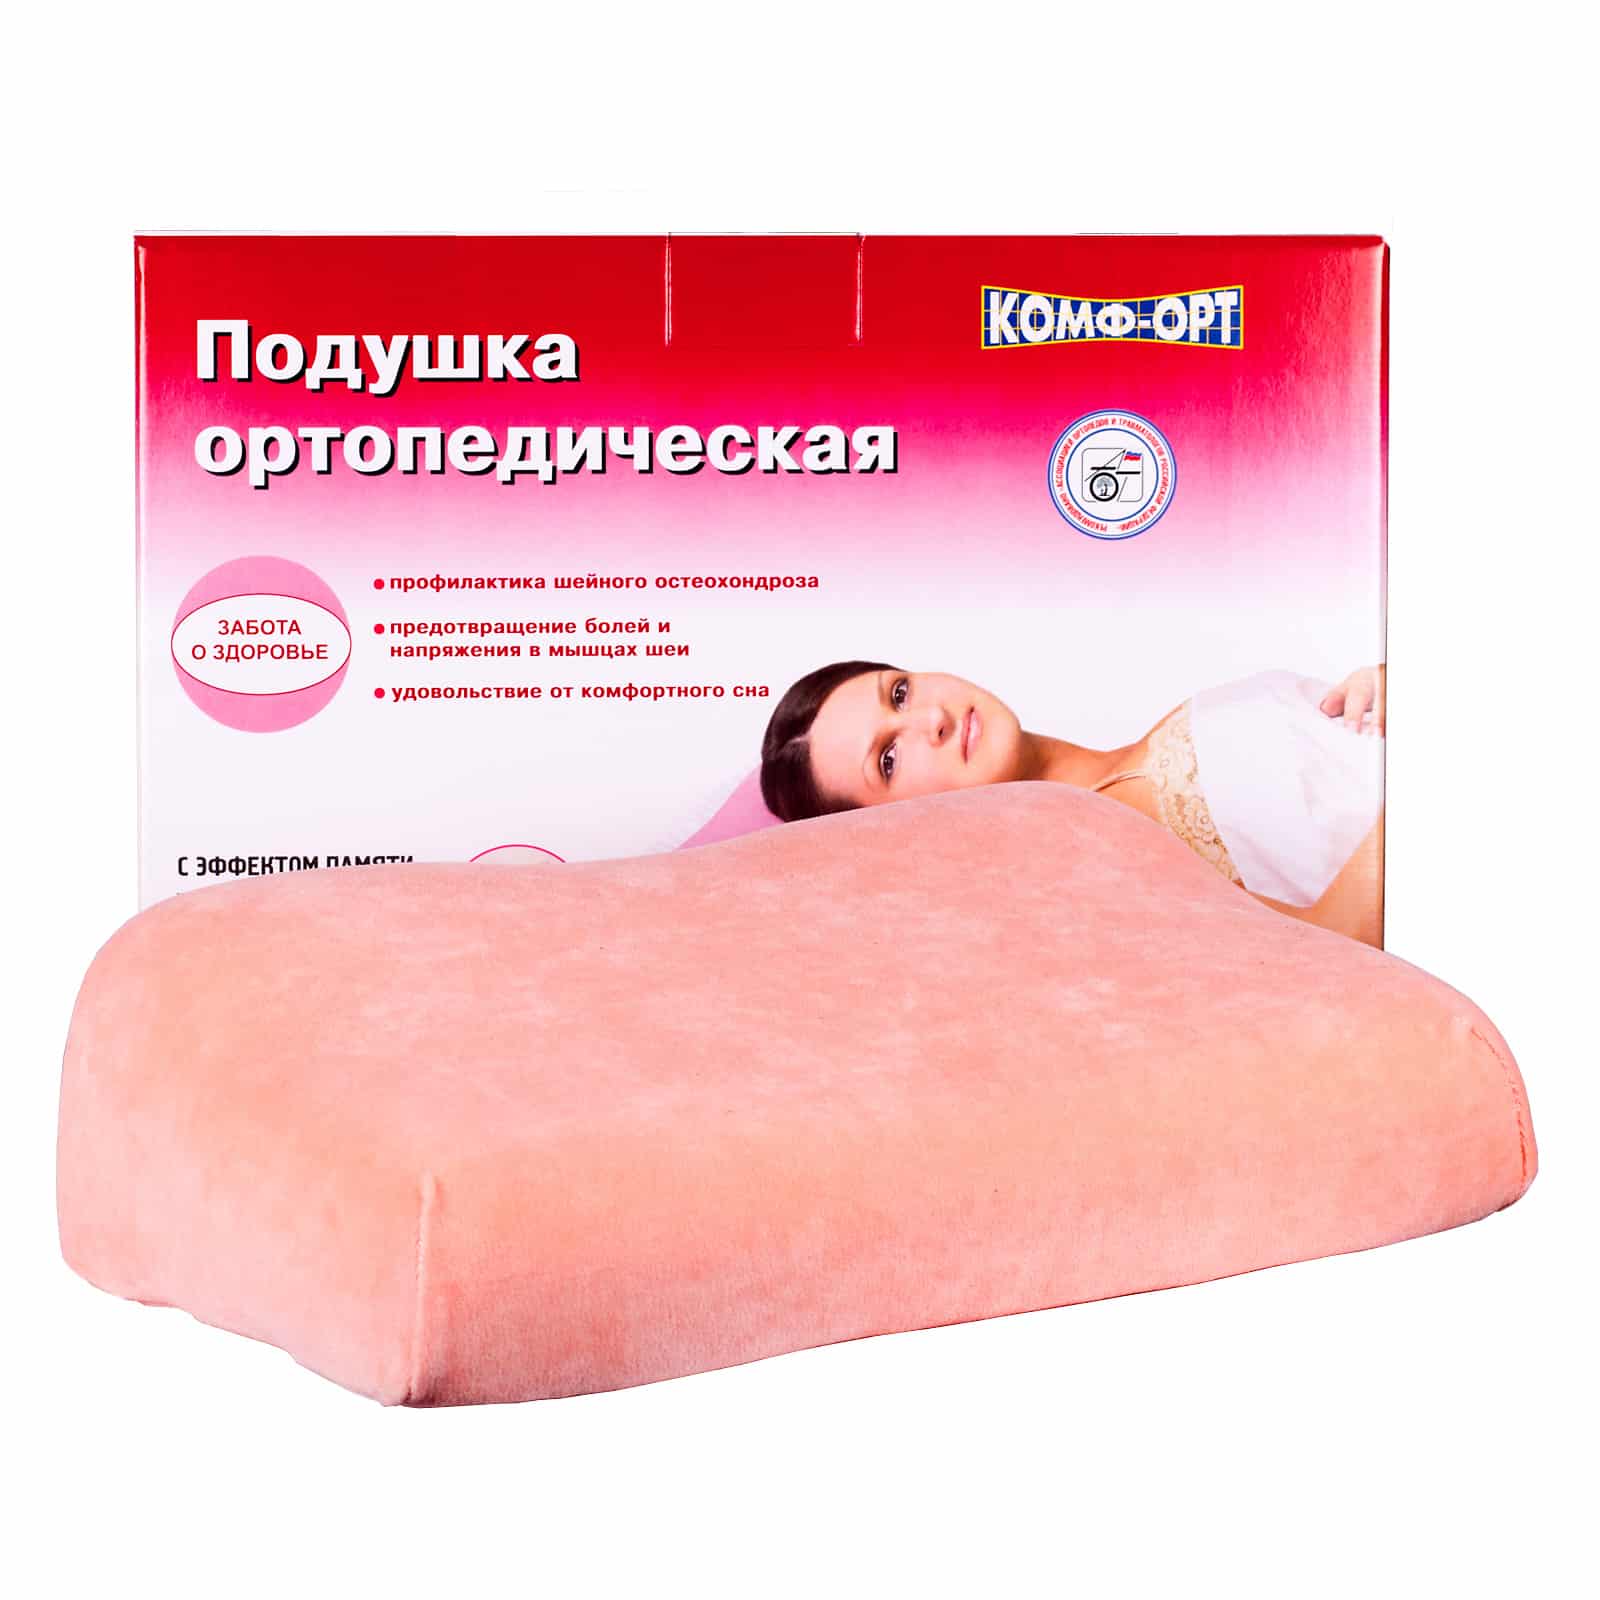 Комф-Орт подушка К-800 ортопедическая д/взрослых 49х39х11см